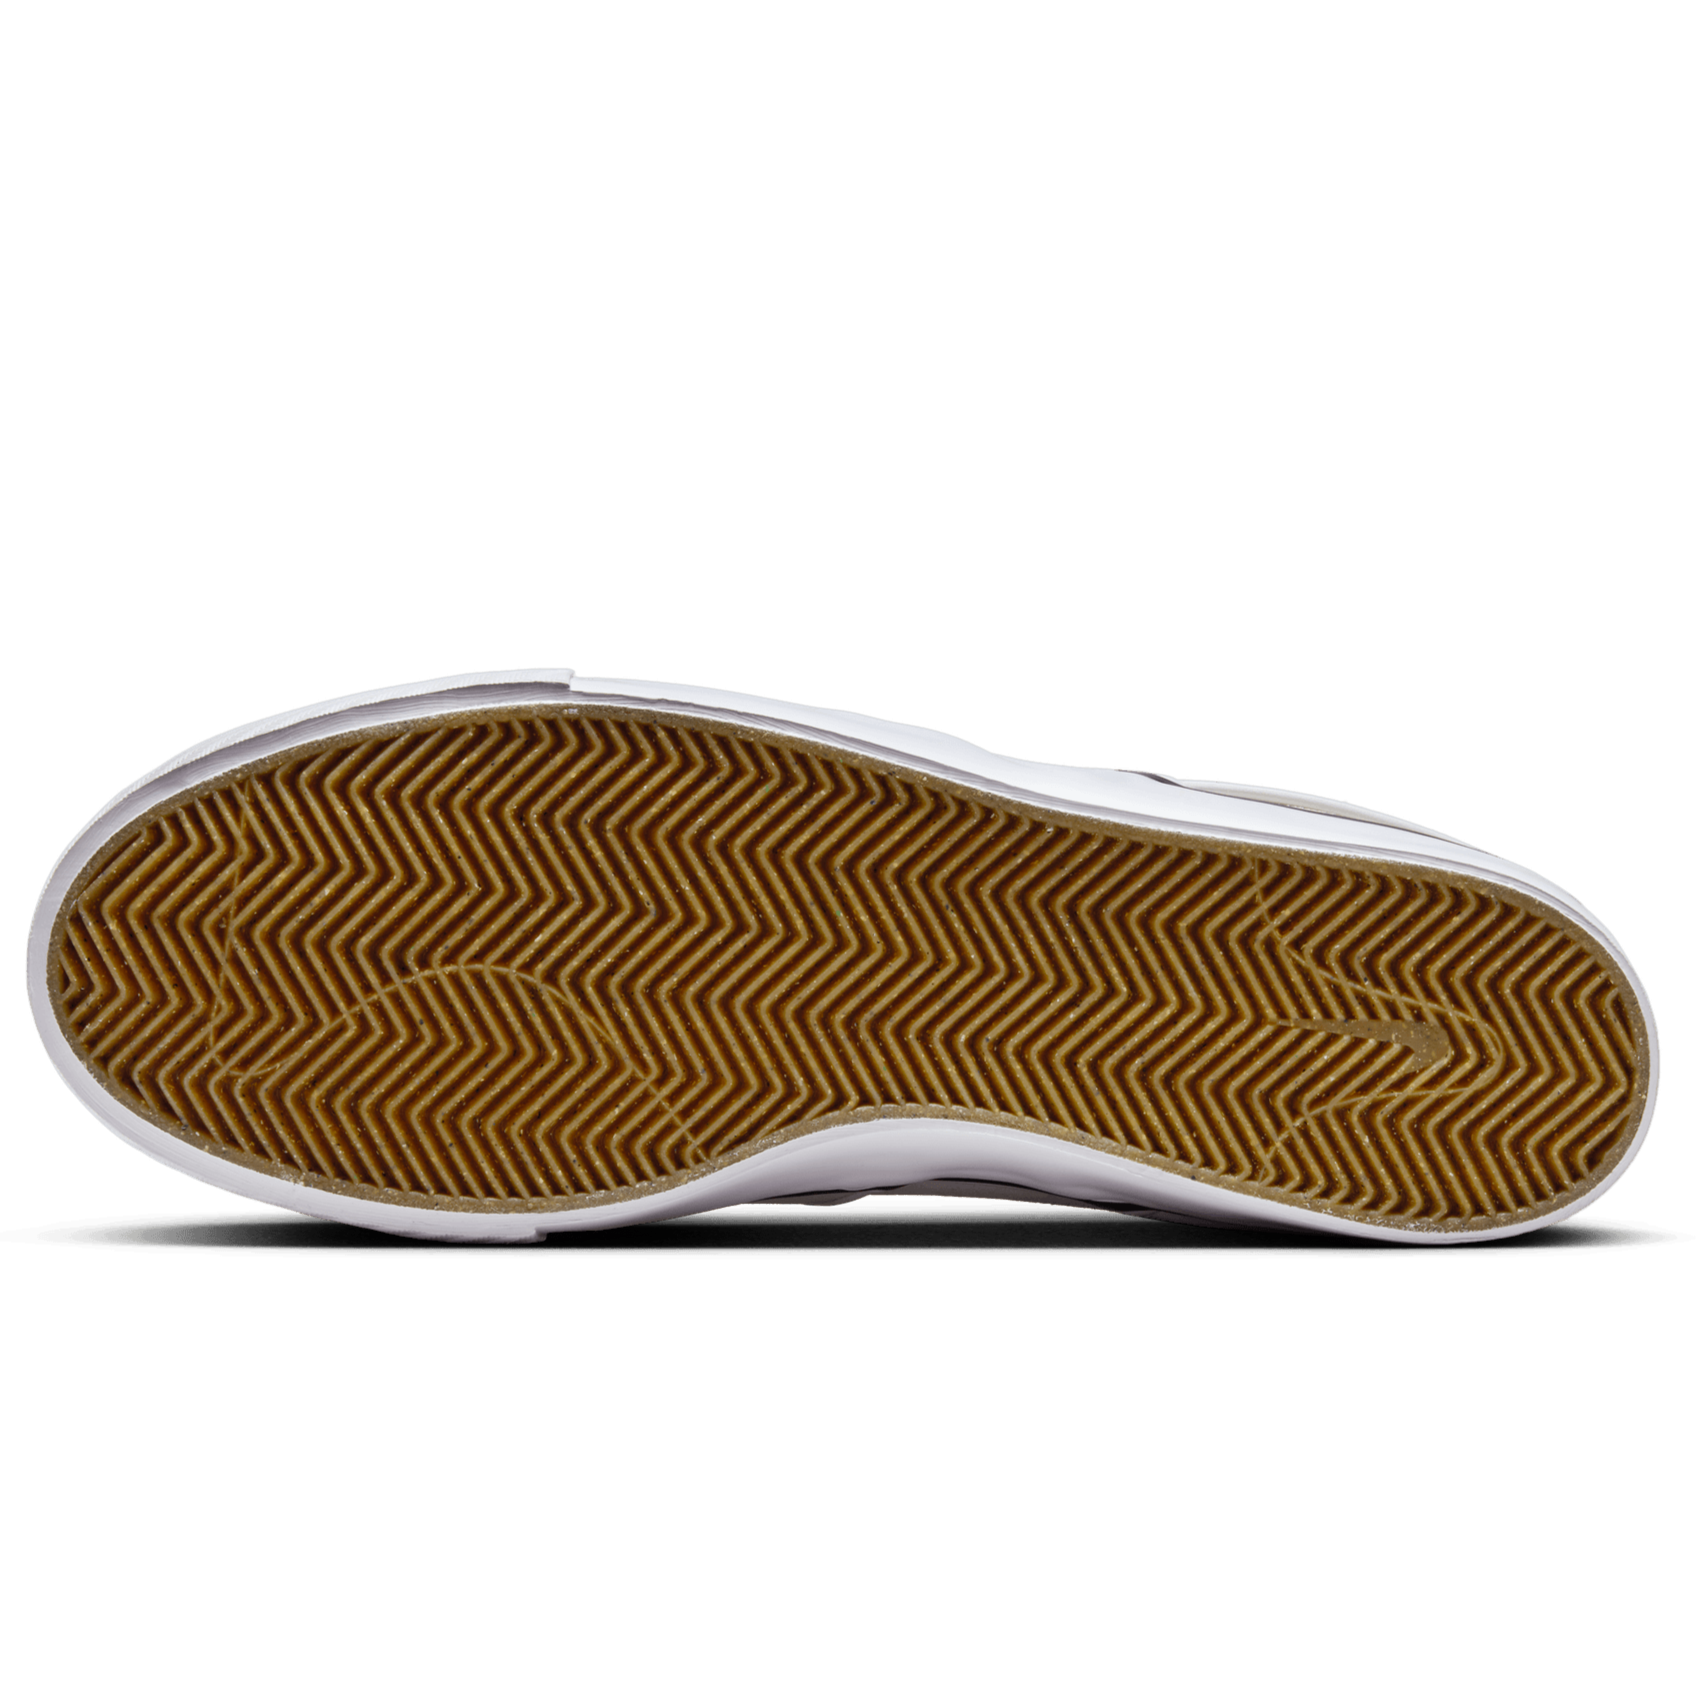 Summit White Janoski+ Slip On Nike SB Skate Shoe Bottom